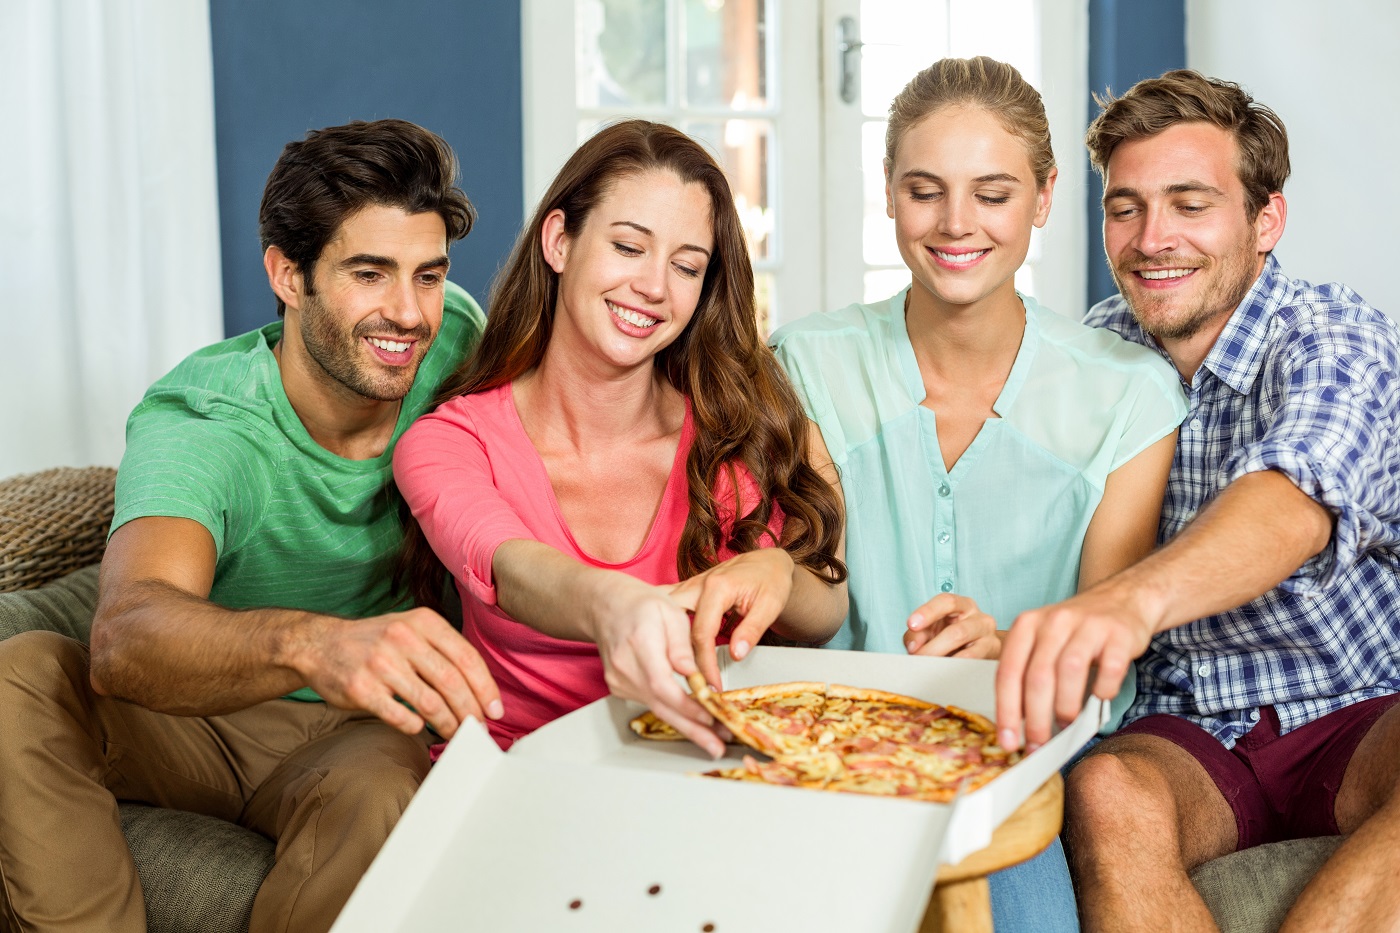 Comment organiser une runion familiale dans le thme de la pizza party?